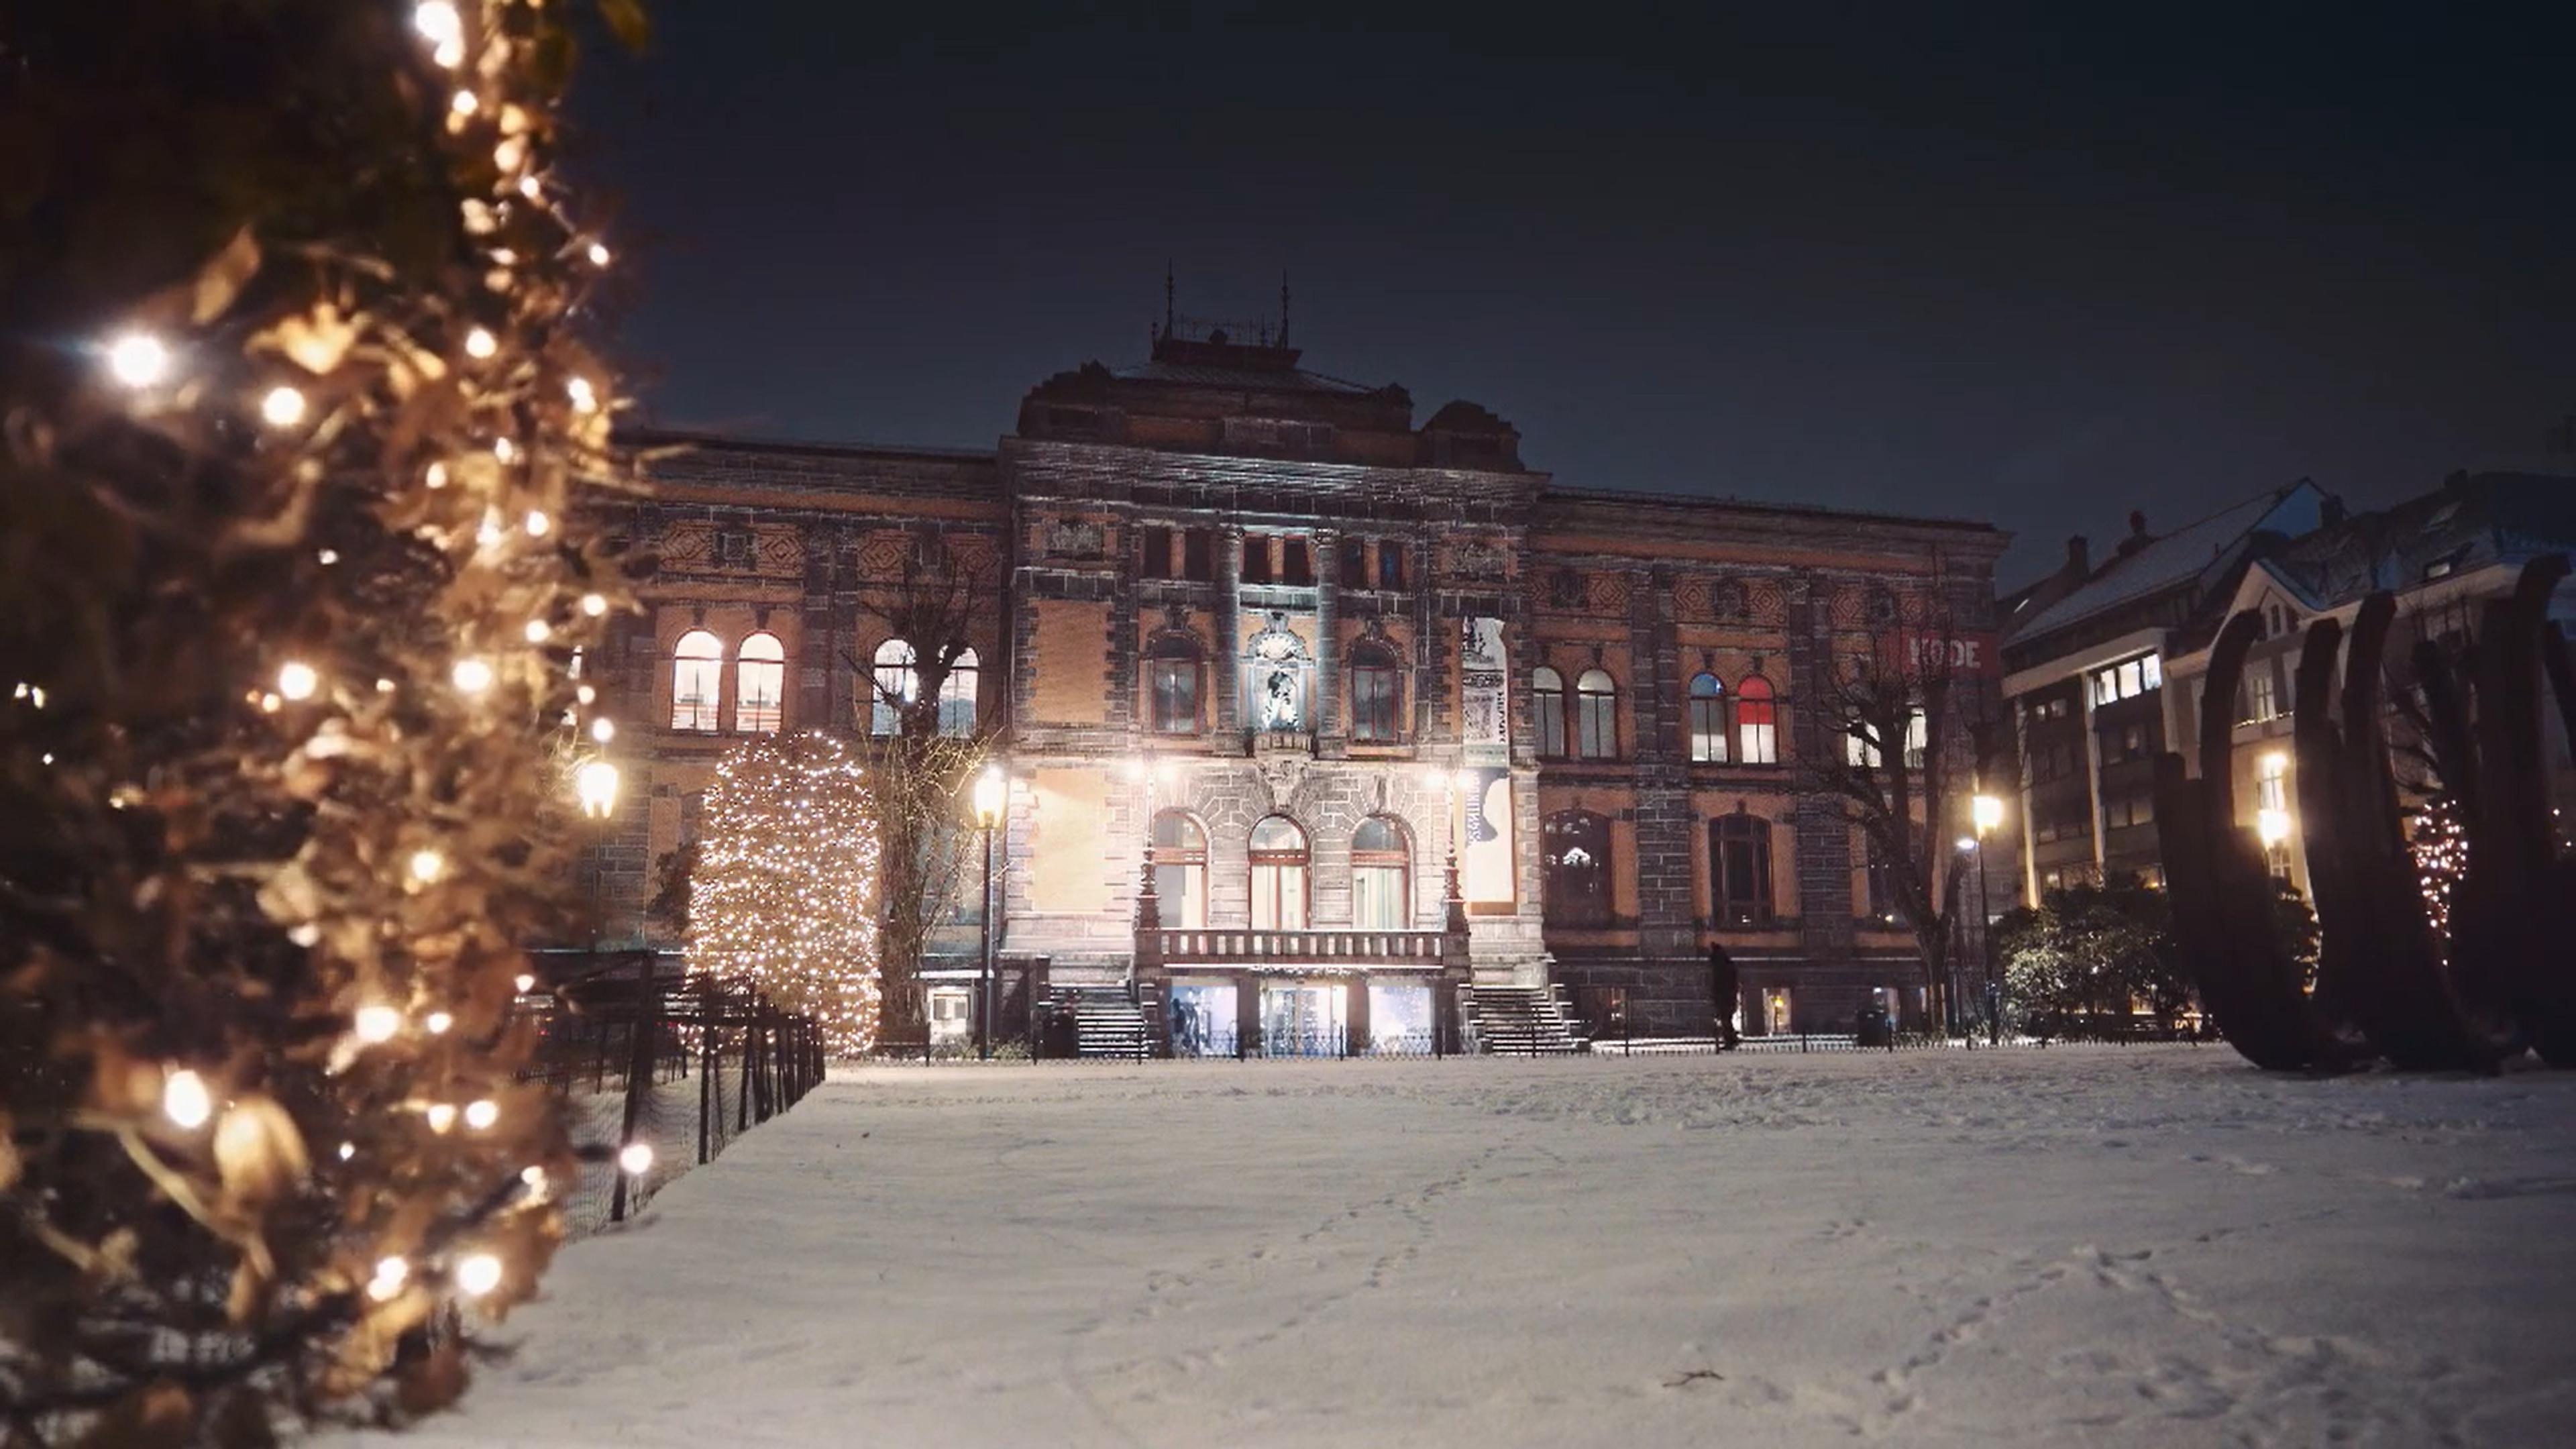 Foto av Permanenten museum i mørke med julelys og snø.